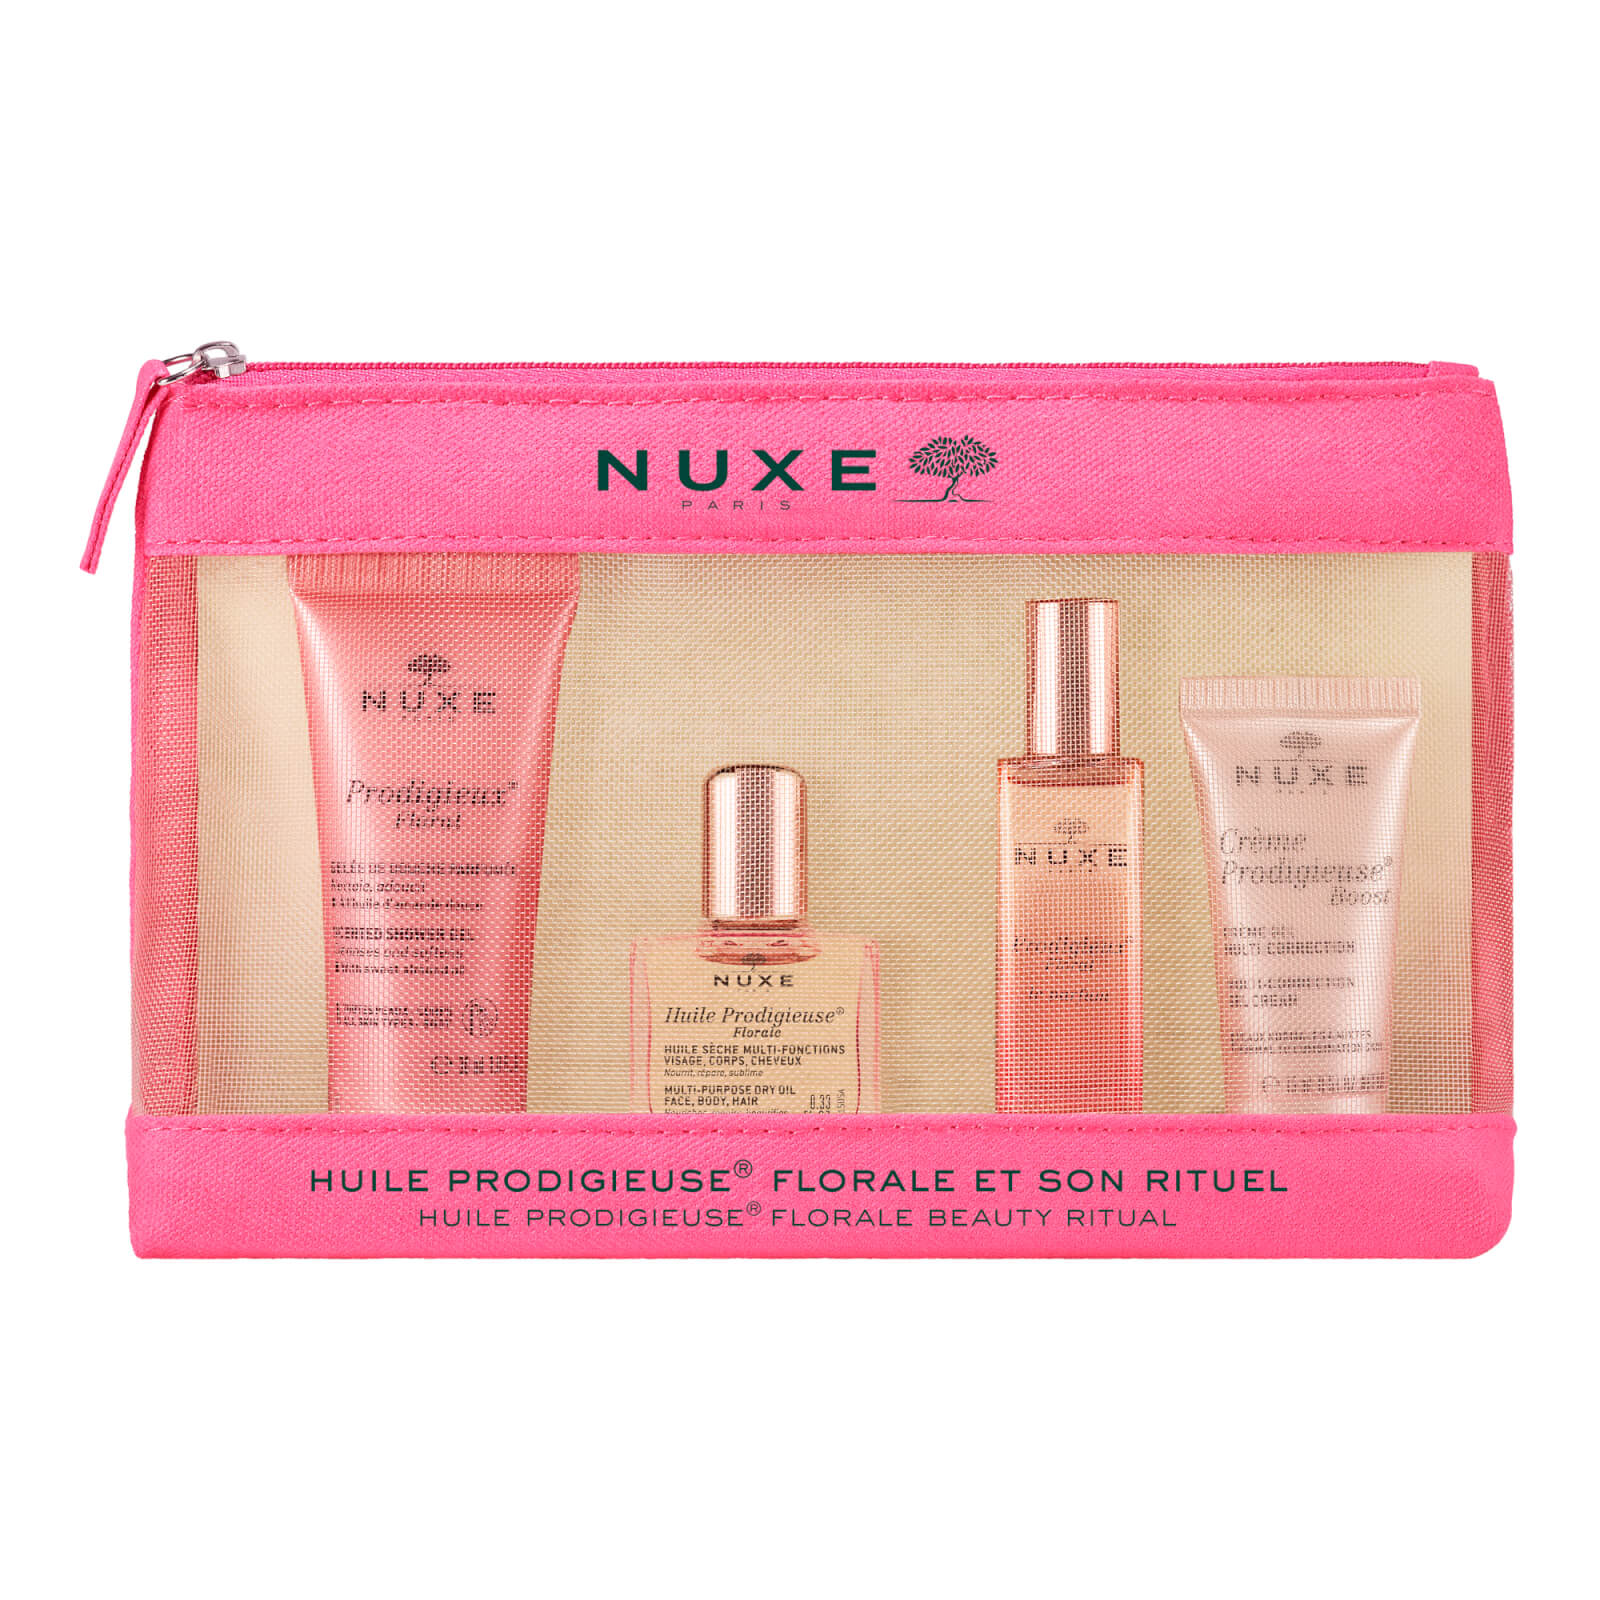 NUXE Prodigieuse® Florale Travel Kit